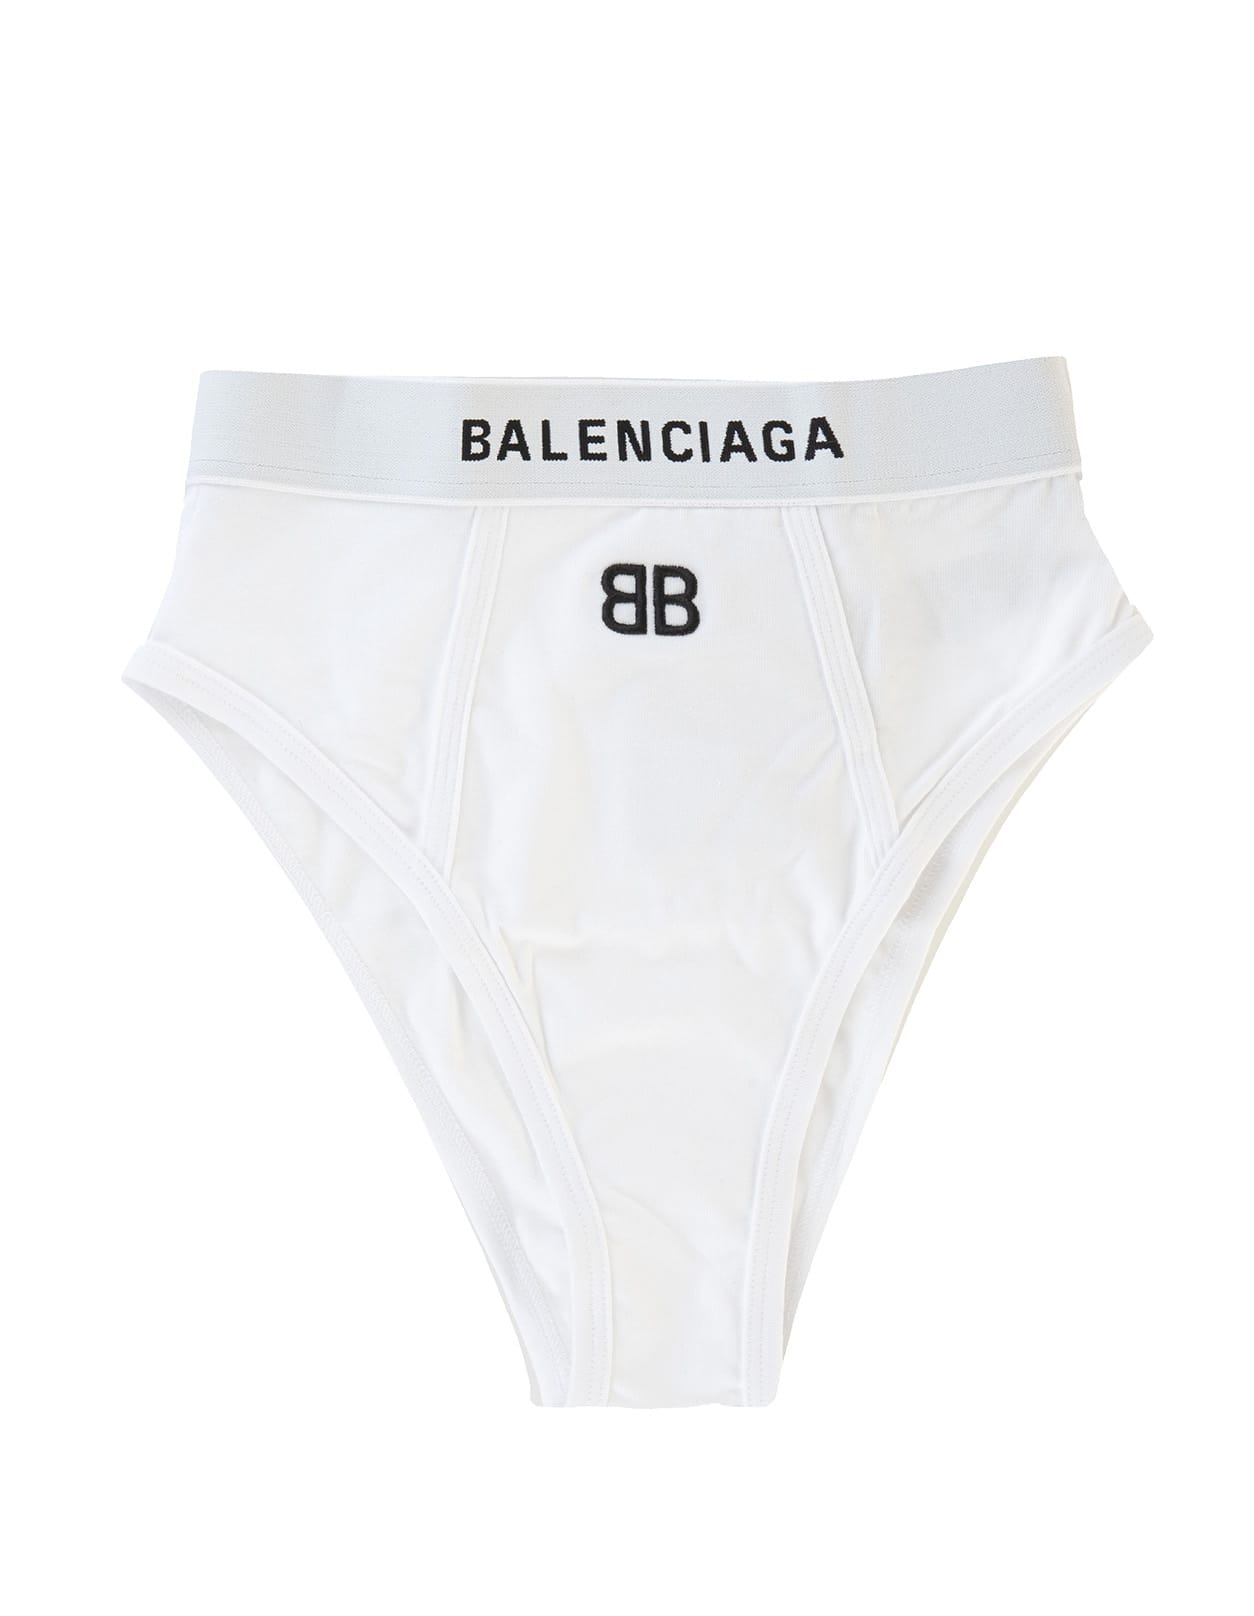 Balenciaga Woman White High Waist Briefs With Bb Logo